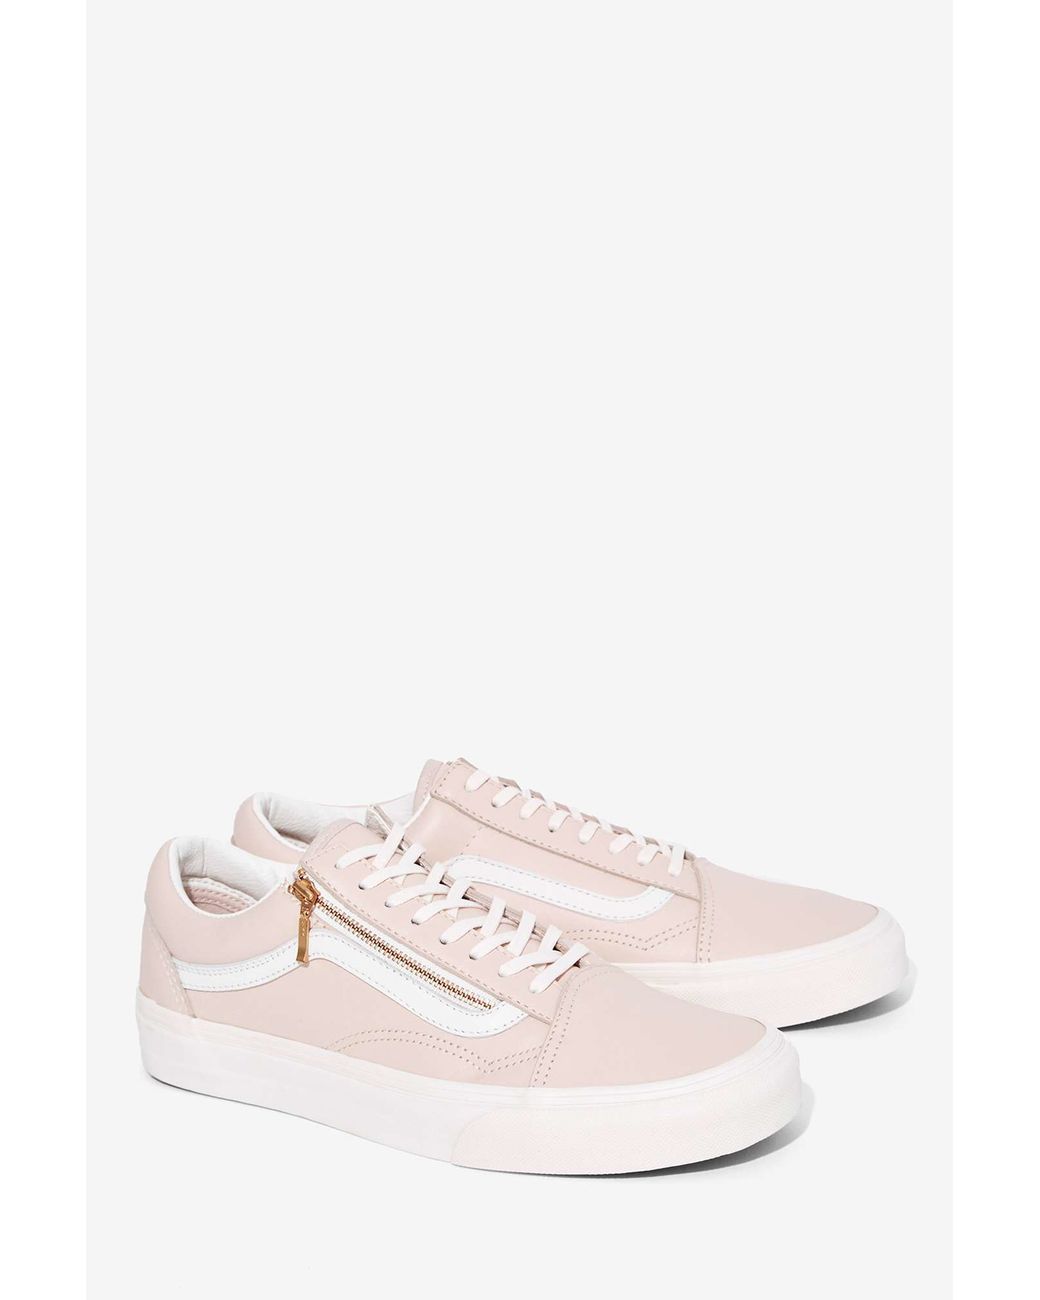 Vans Old Skool Zip Leather Sneaker in Pink | Lyst